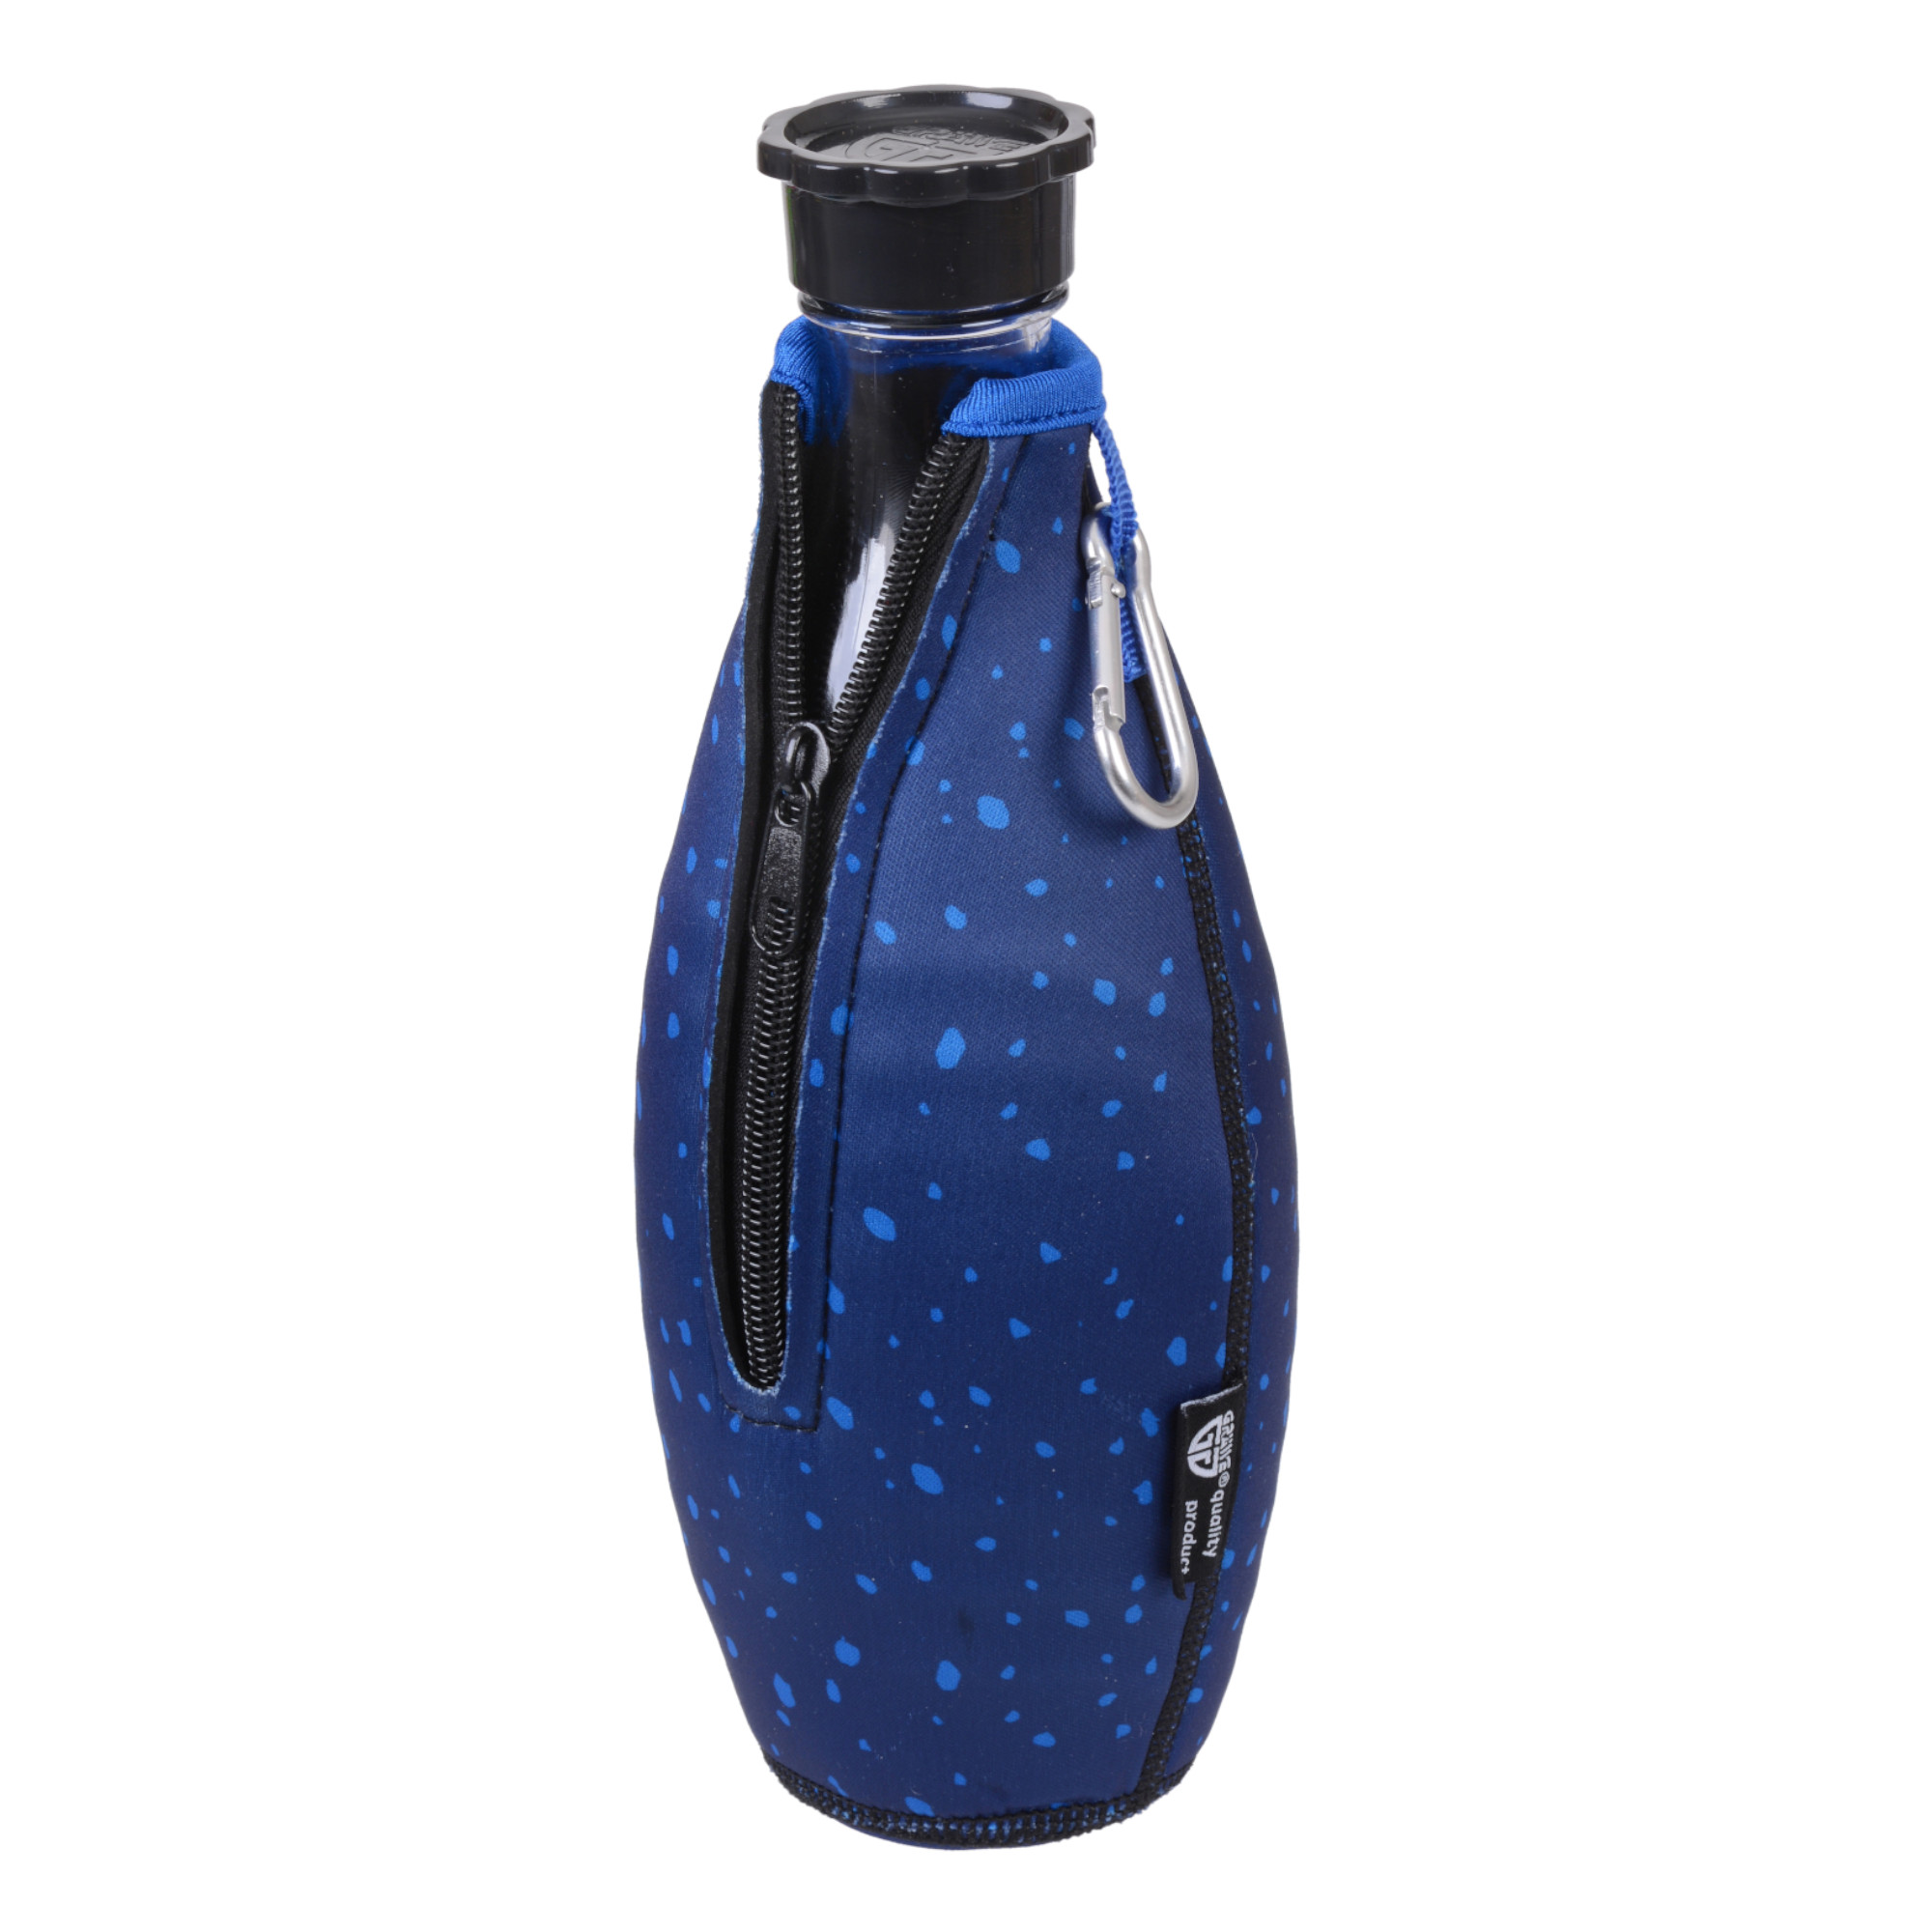 Flaschenhülle für Sodastream-Glasflaschen, Neopren, dunkelblau/hellblau